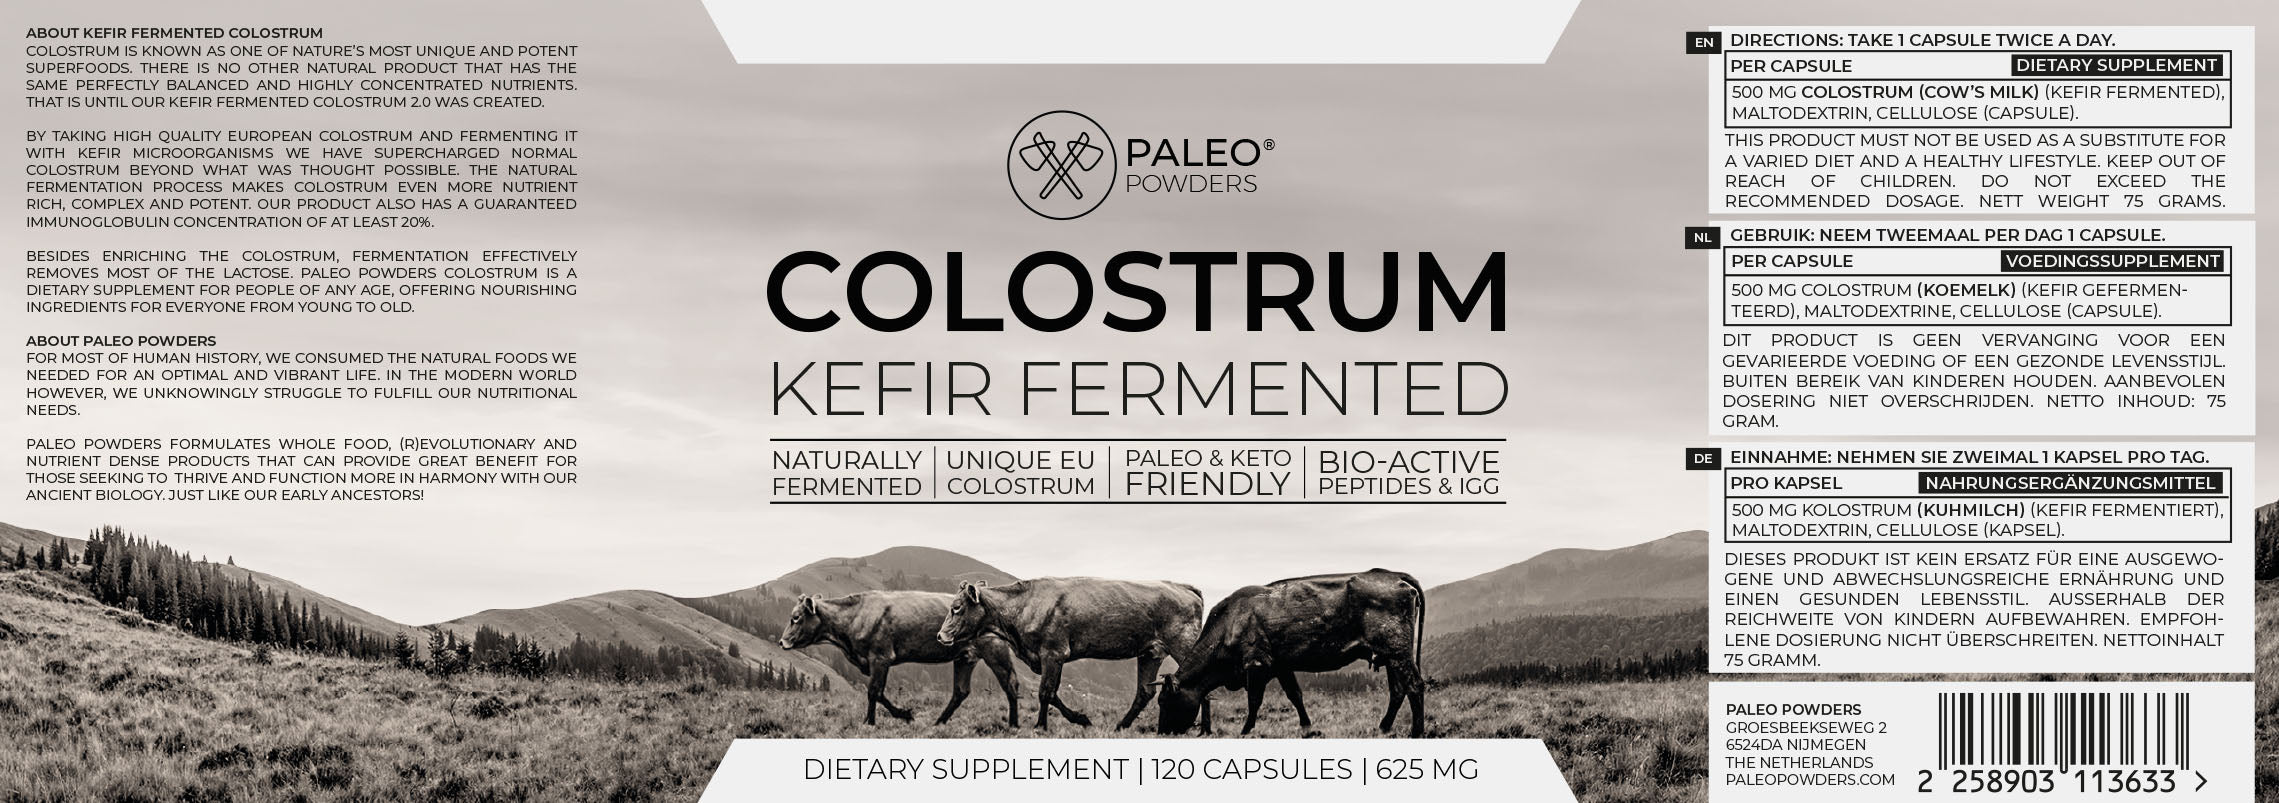 Colostrum - Kefir Gefermenteerd - 120 capsules - Paleo Powders